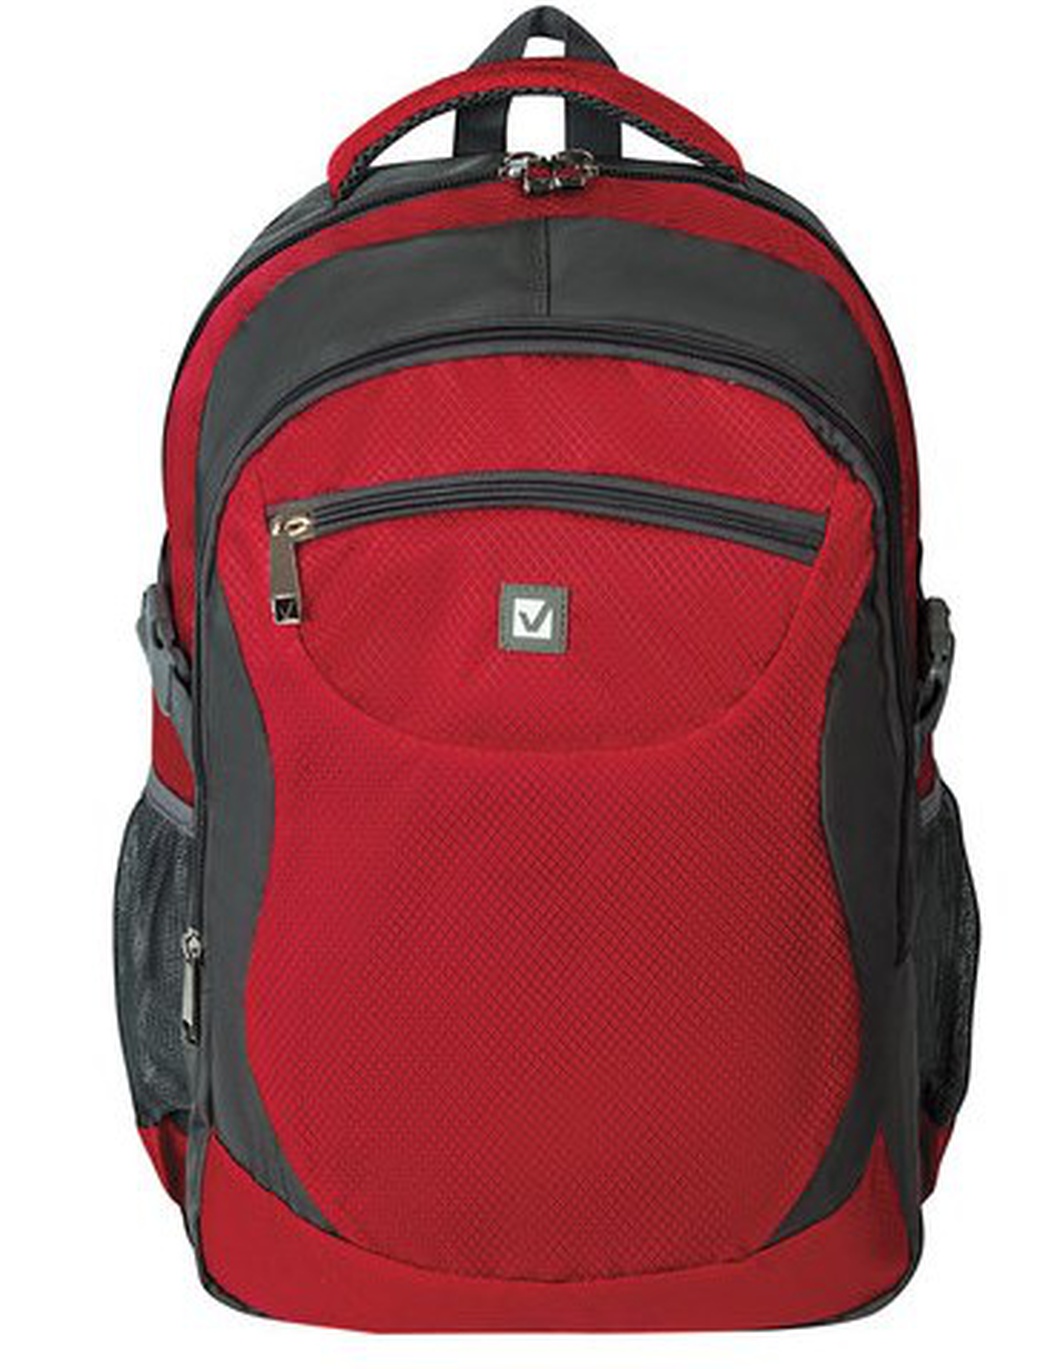 Рюкзак для школы и офиса Brauberg StreetBall 2, 48*34*18см, 30 л, серо-красный фото